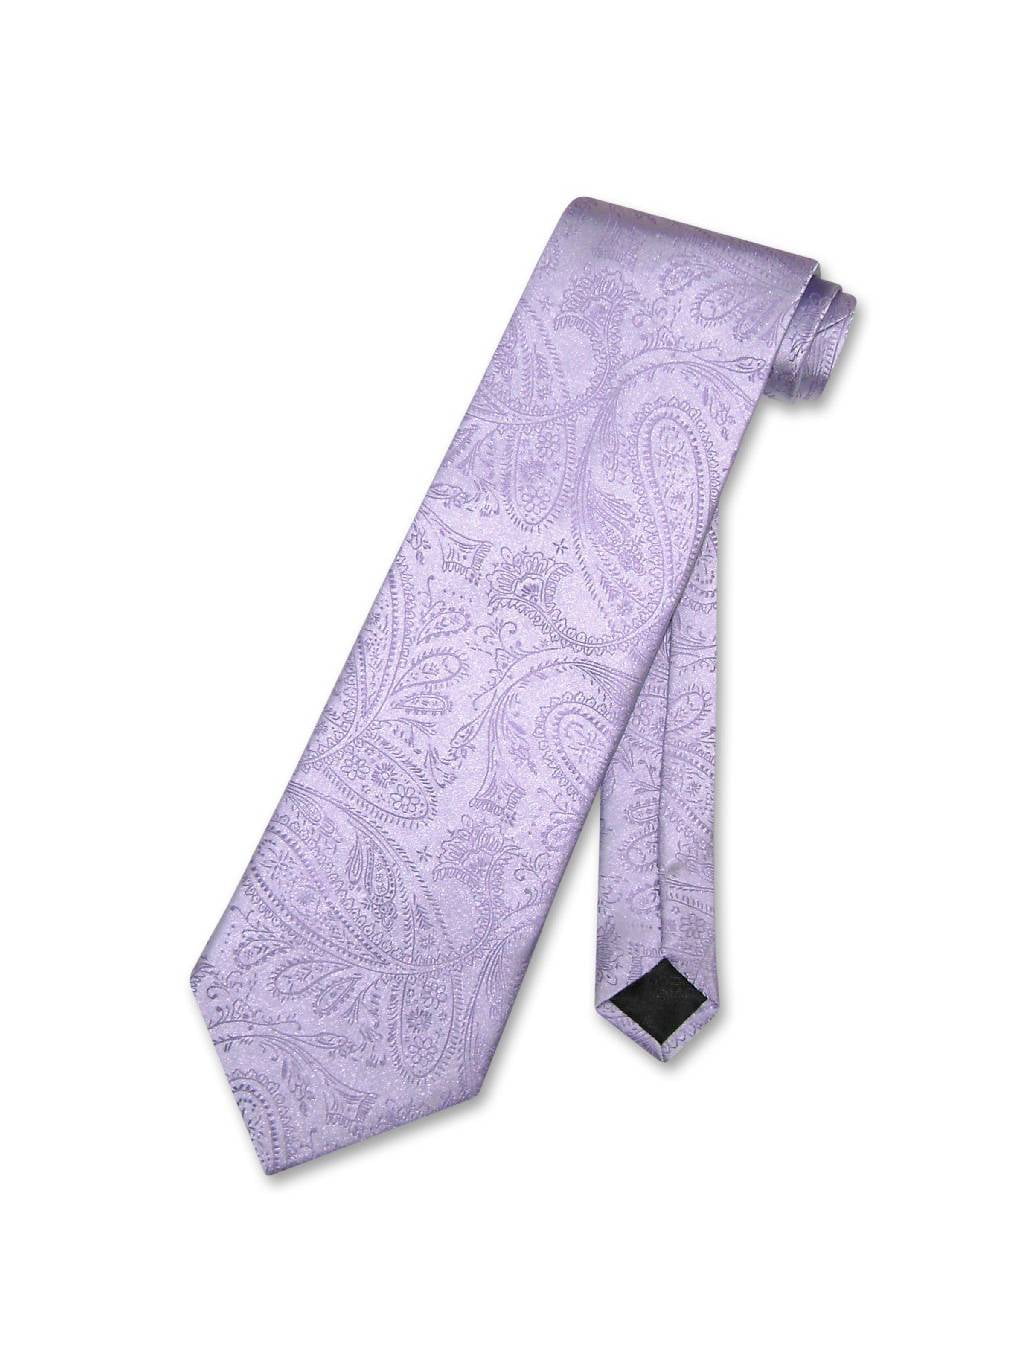 Vesuvio Napoli NeckTie BURNT ORANGE Color Paisley Design Men's Neck Tie 